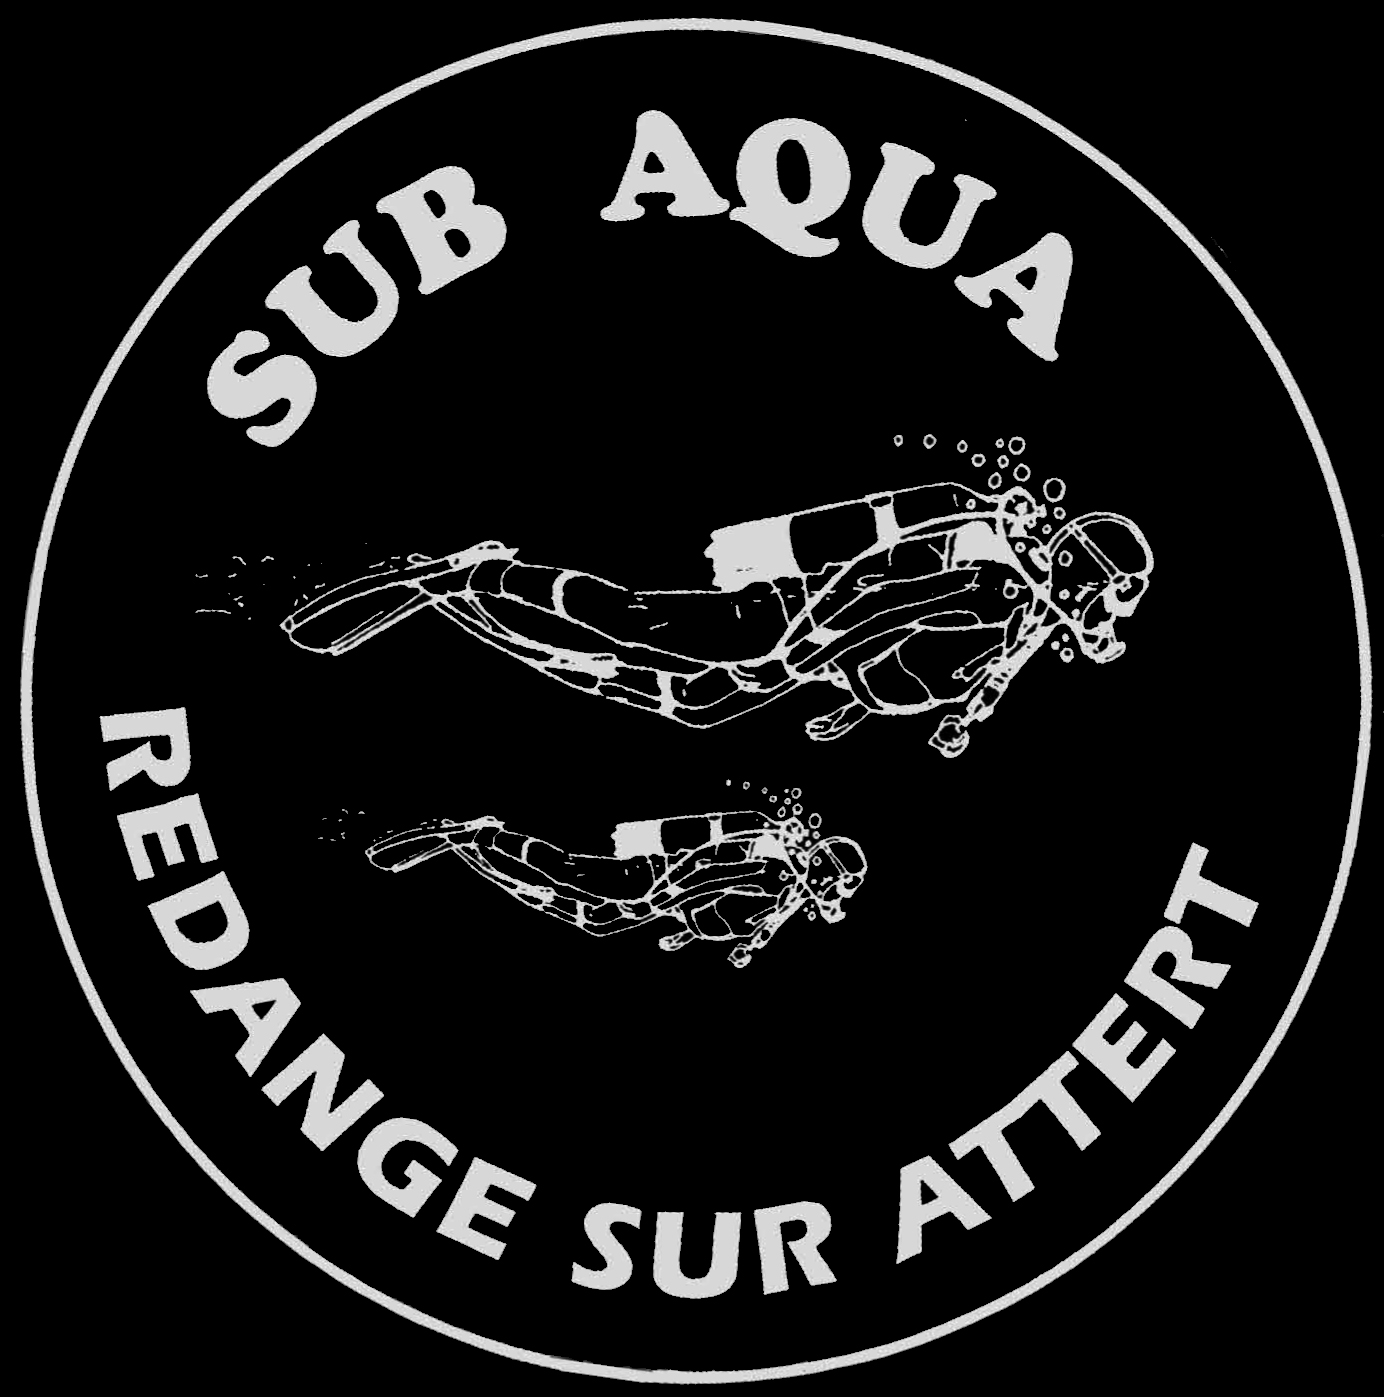 SARA - Sub Aqua Redange/Attert